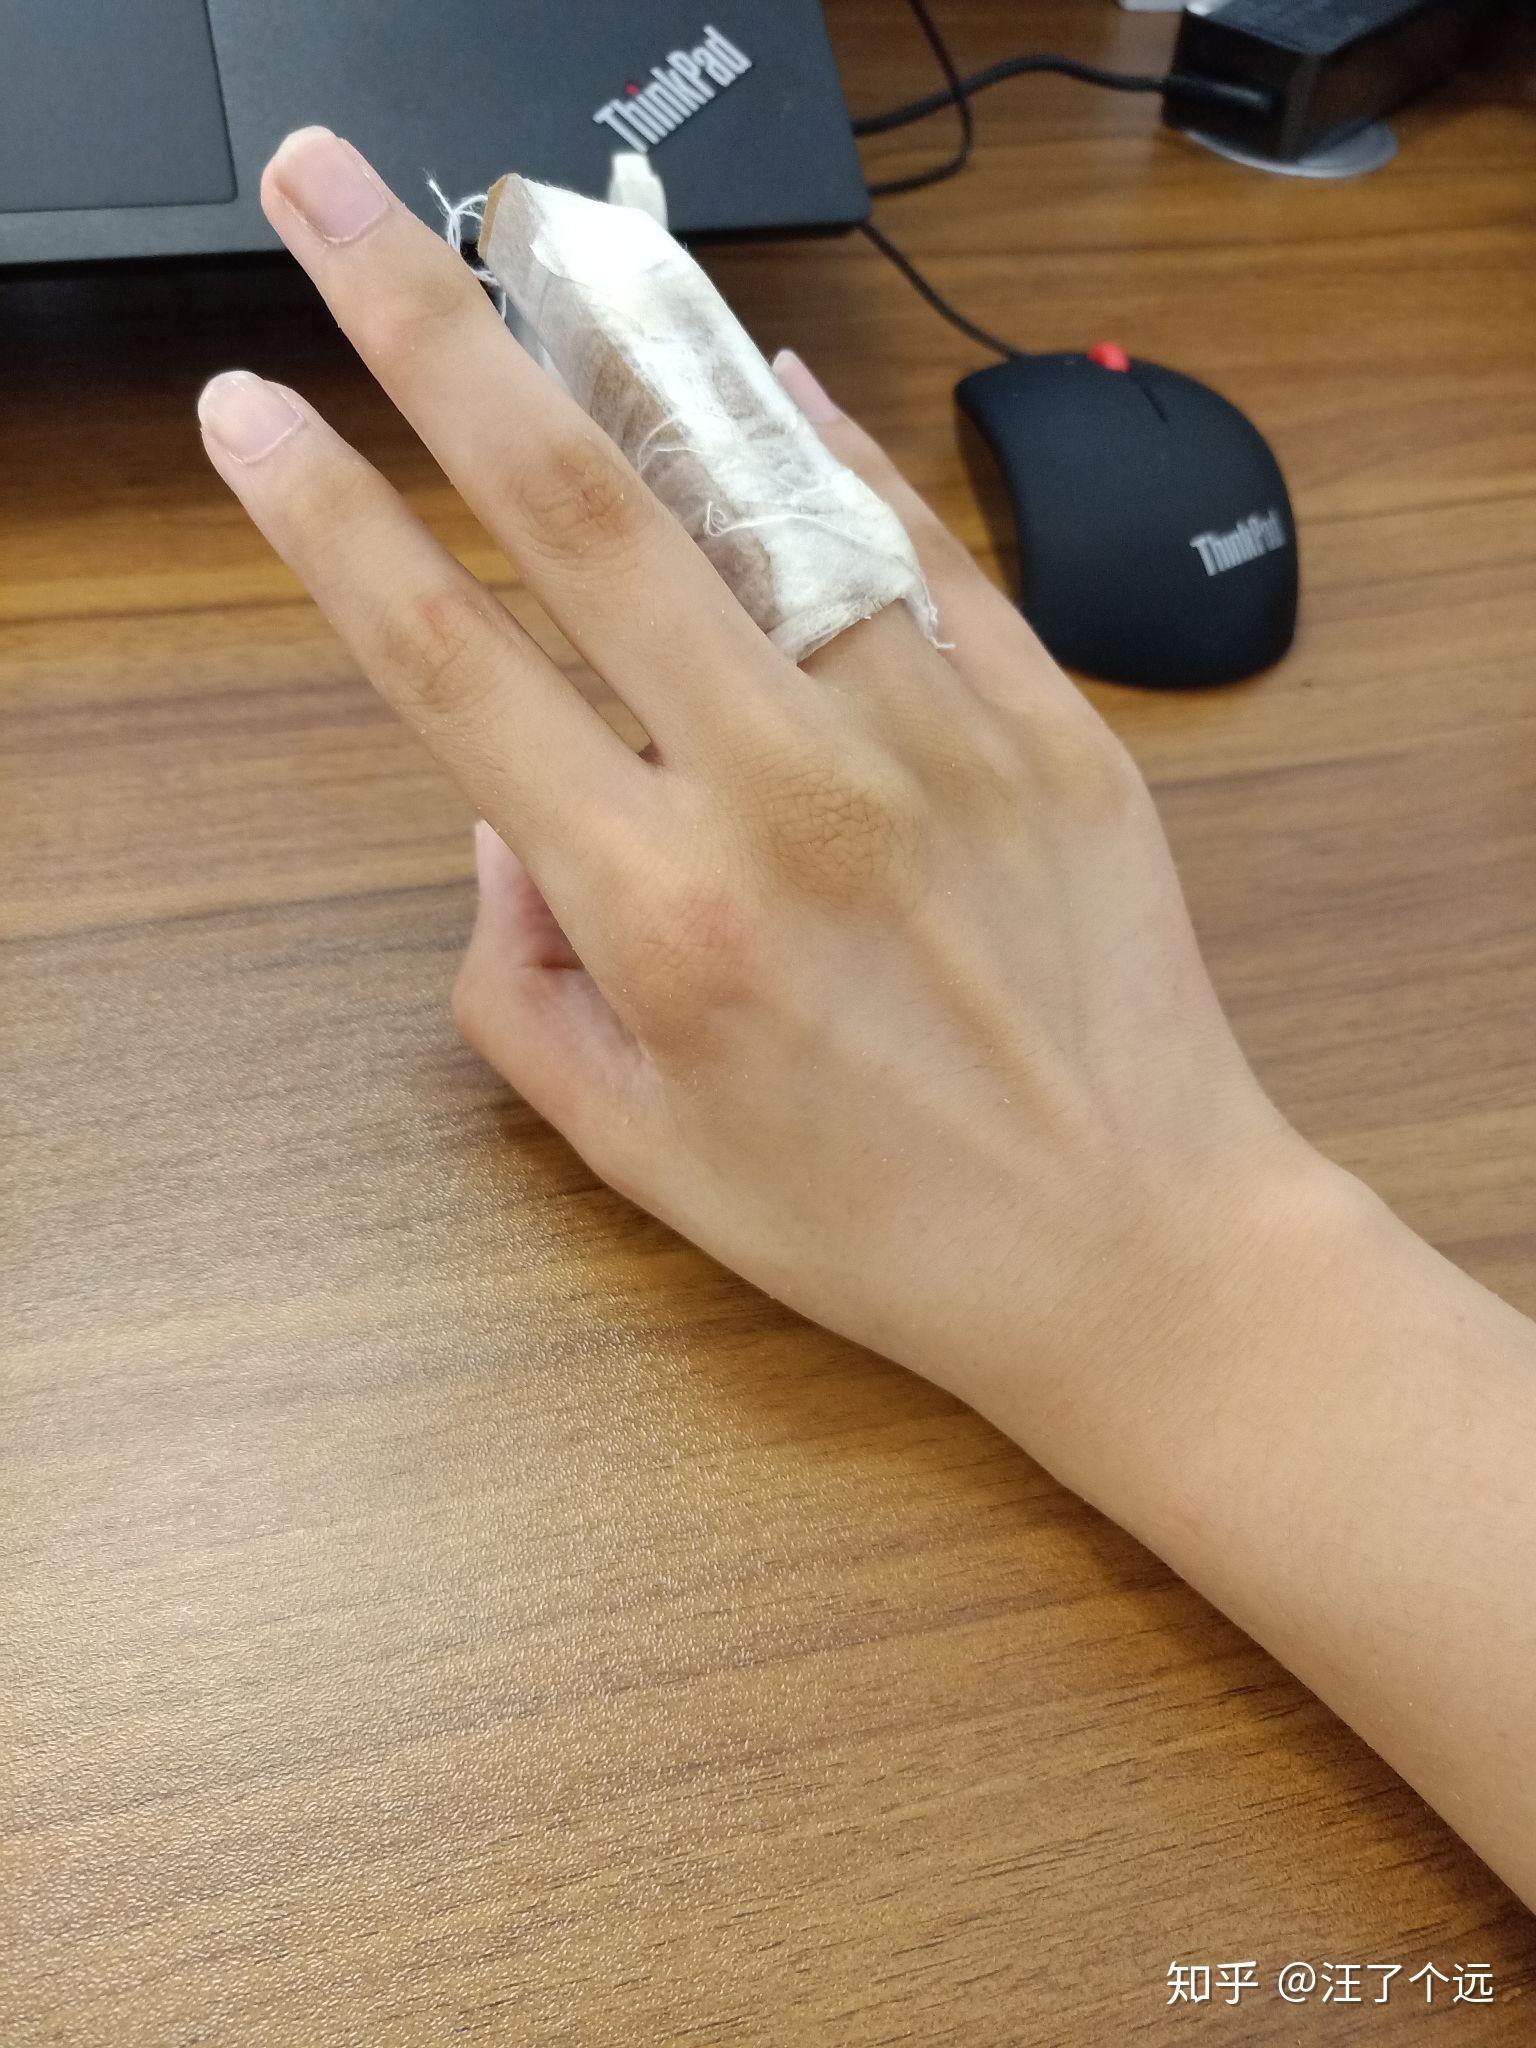 手指头骨折是种怎样的体验? 